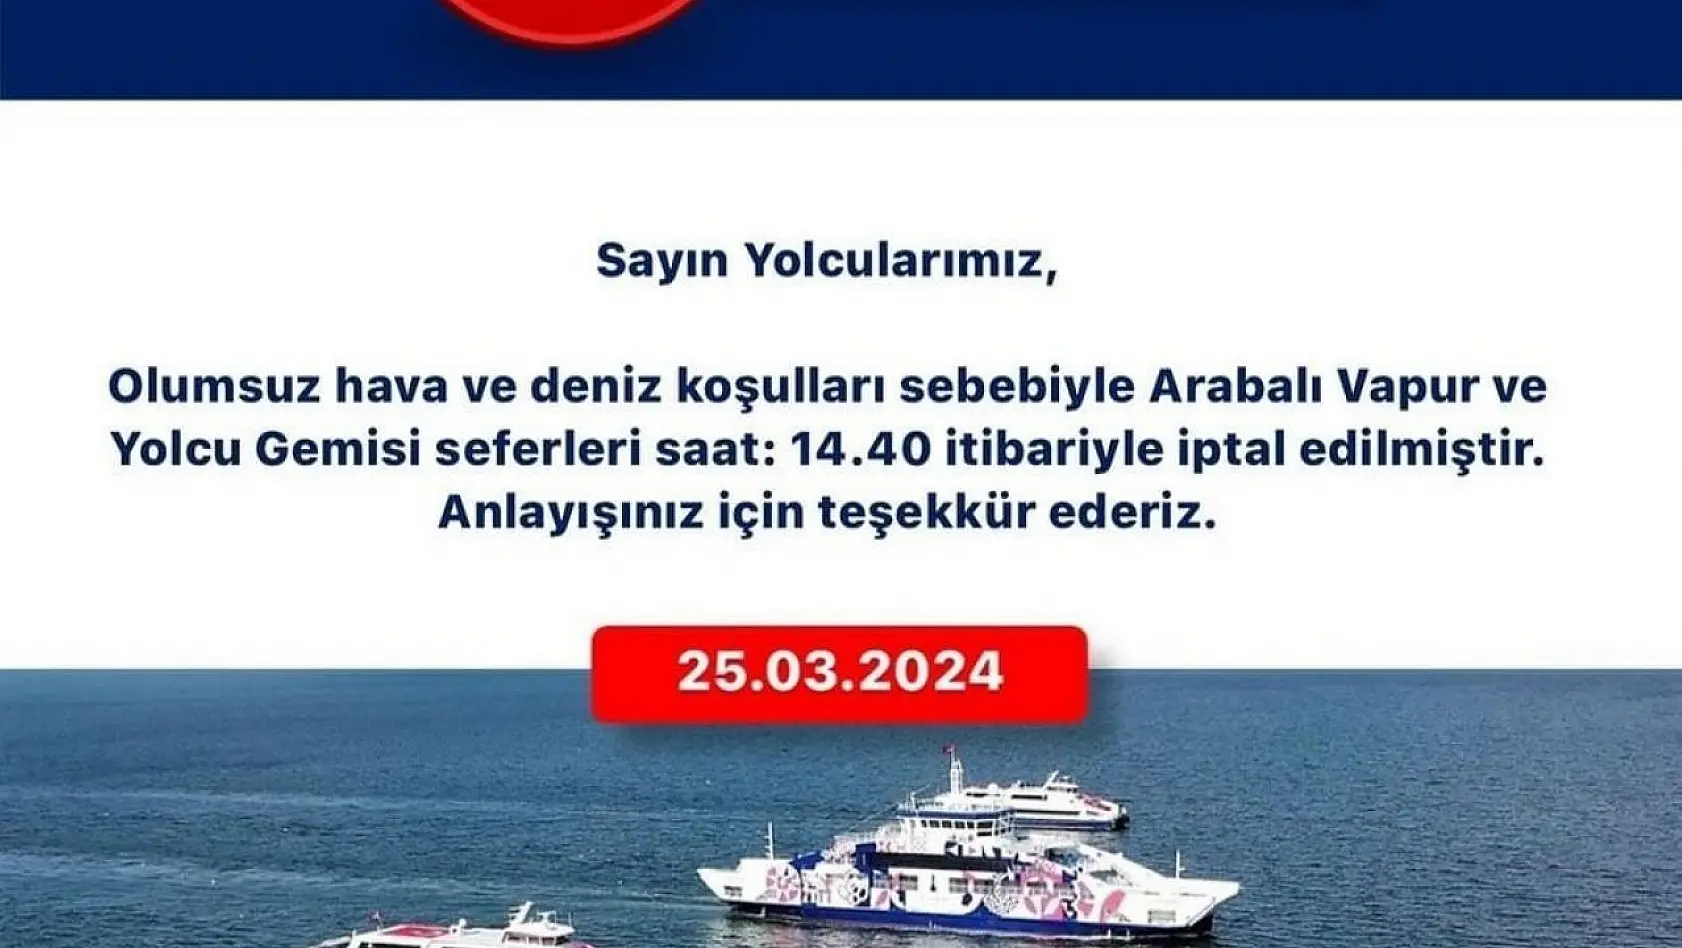 İzmir'de vapur seferleri iptal edildi